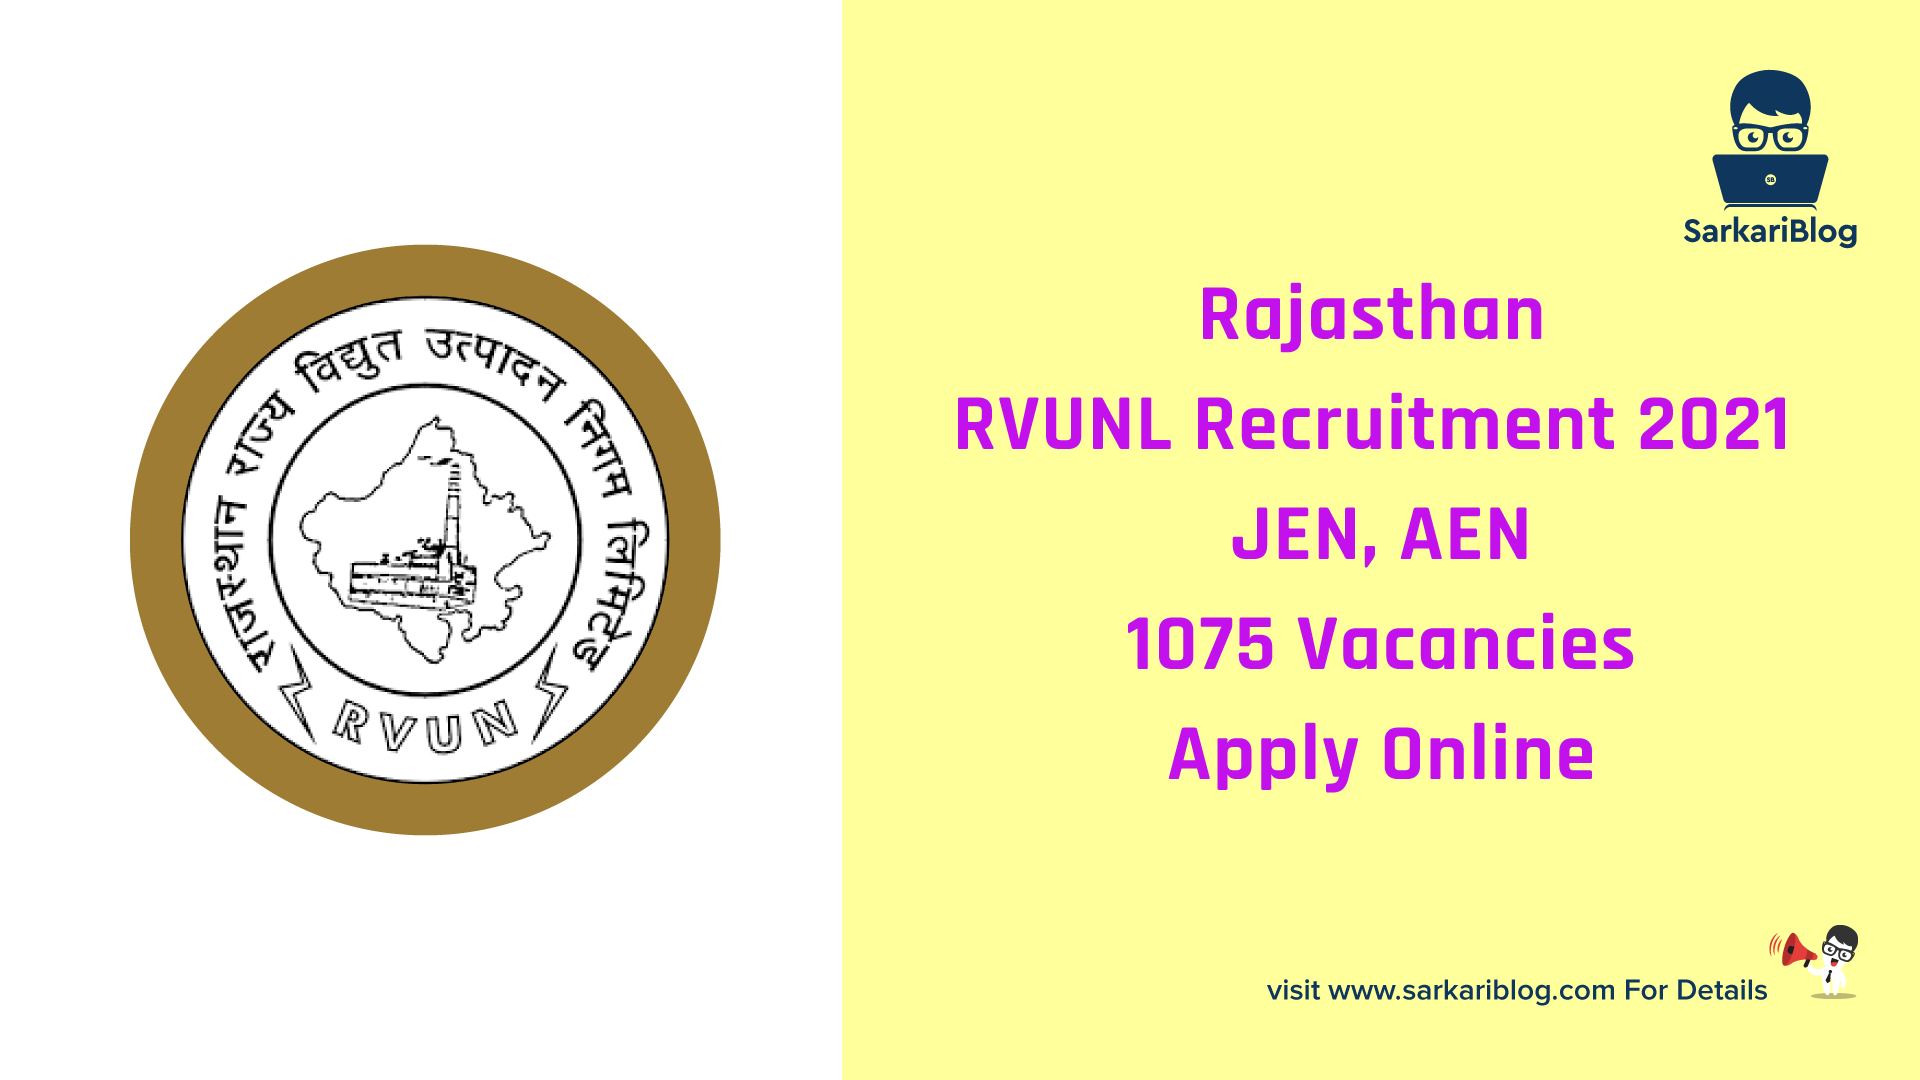 Rajasthan RVUNL Recruitment 2021